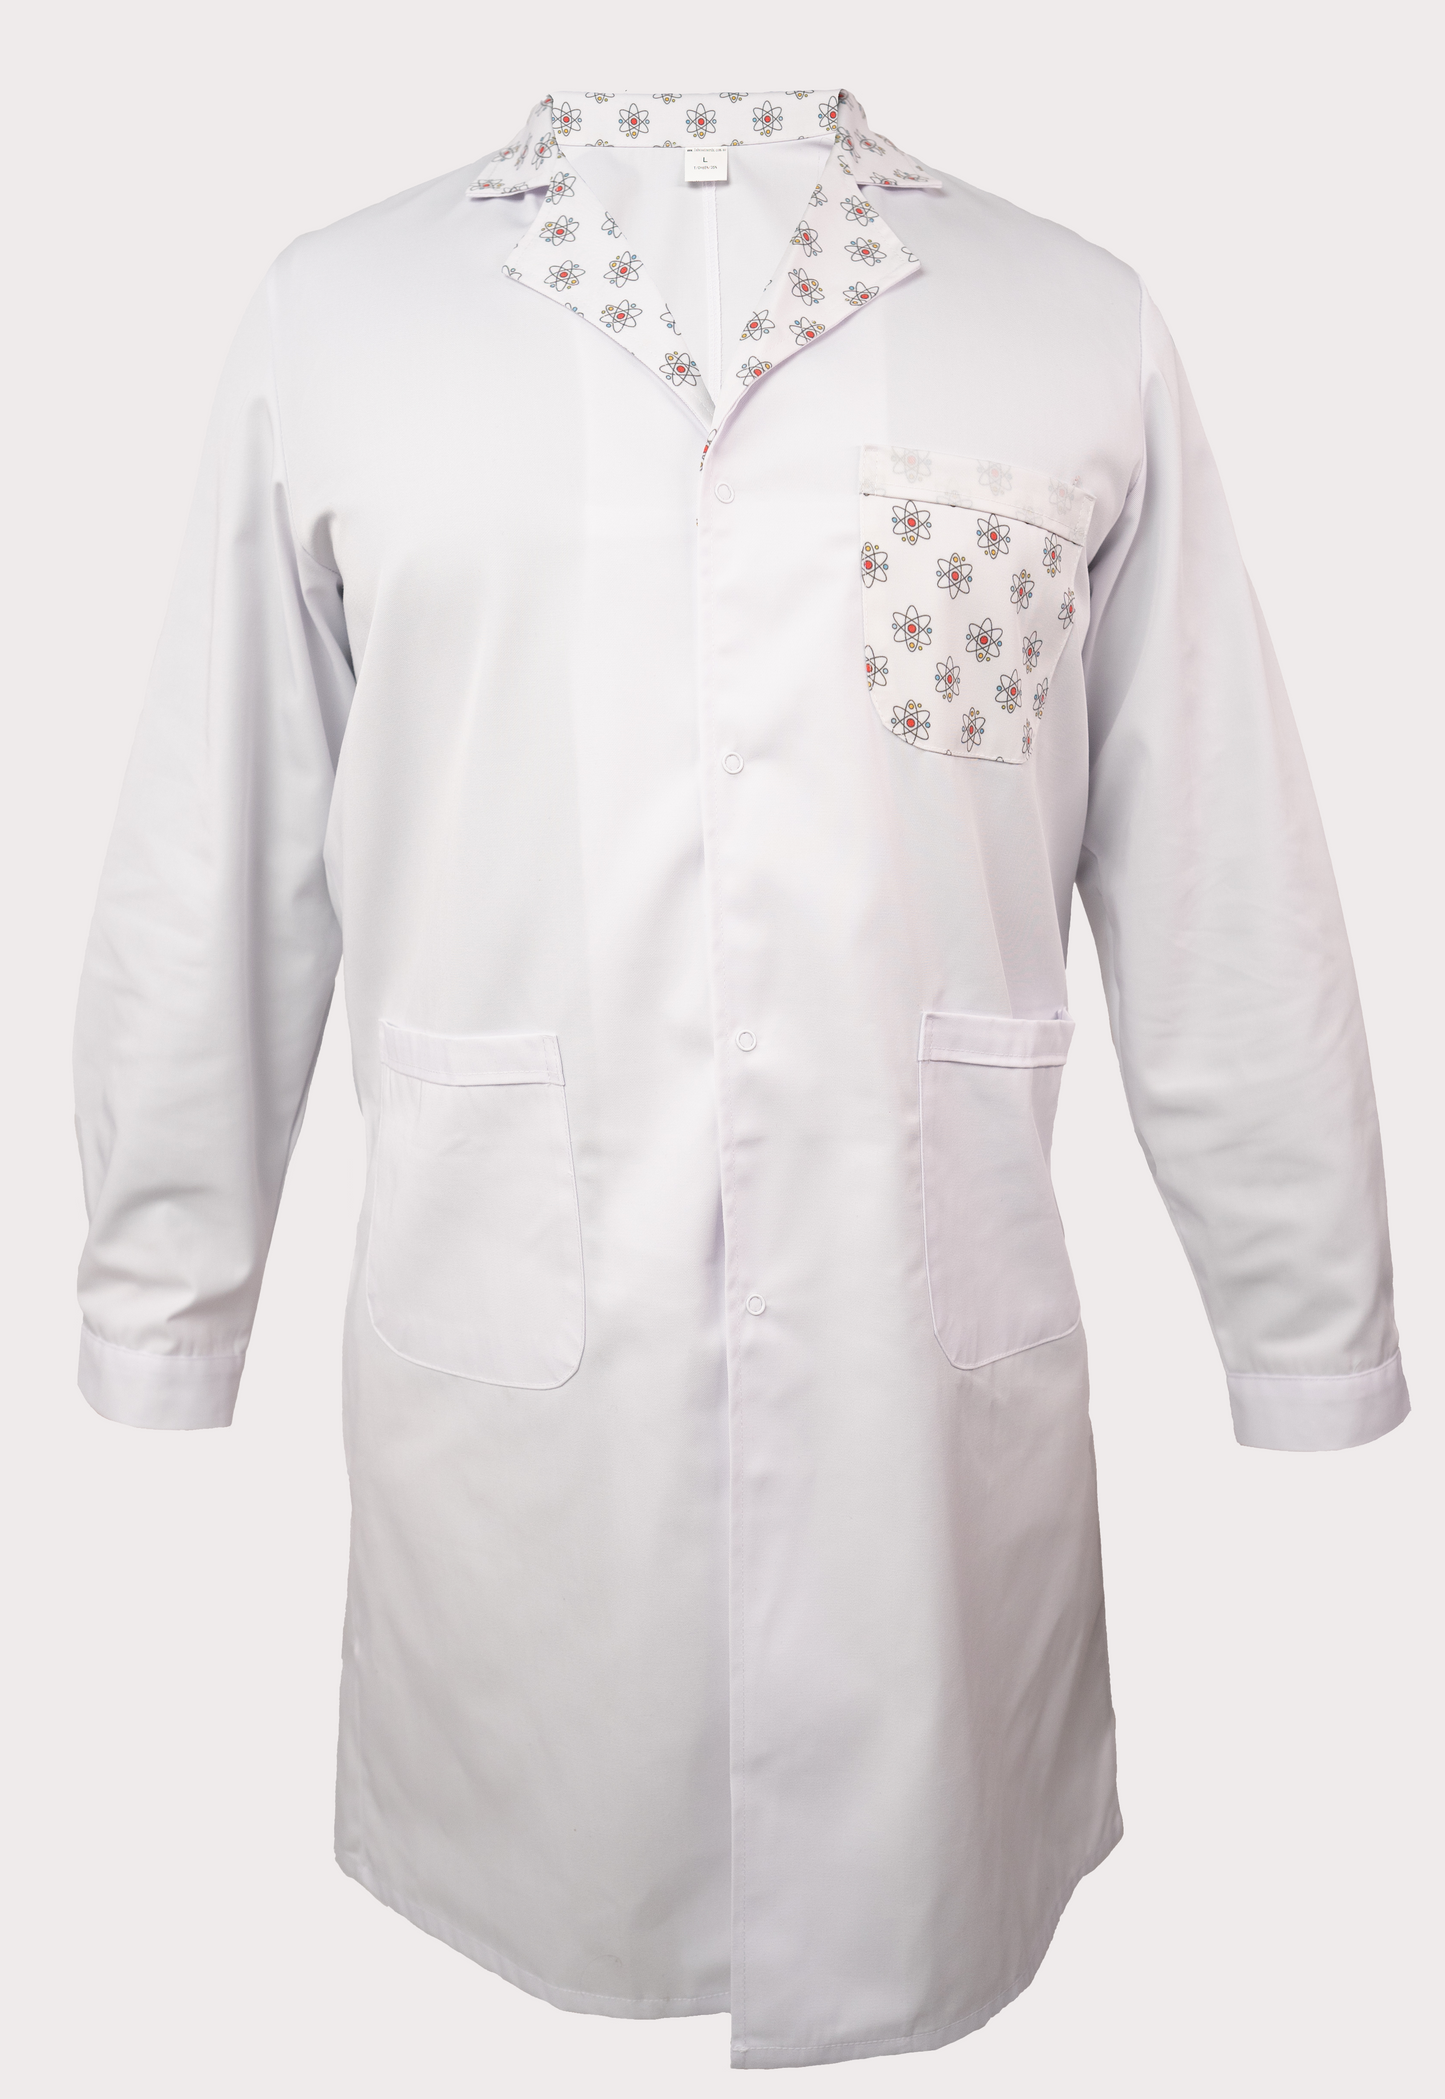 'Atom' lab coat